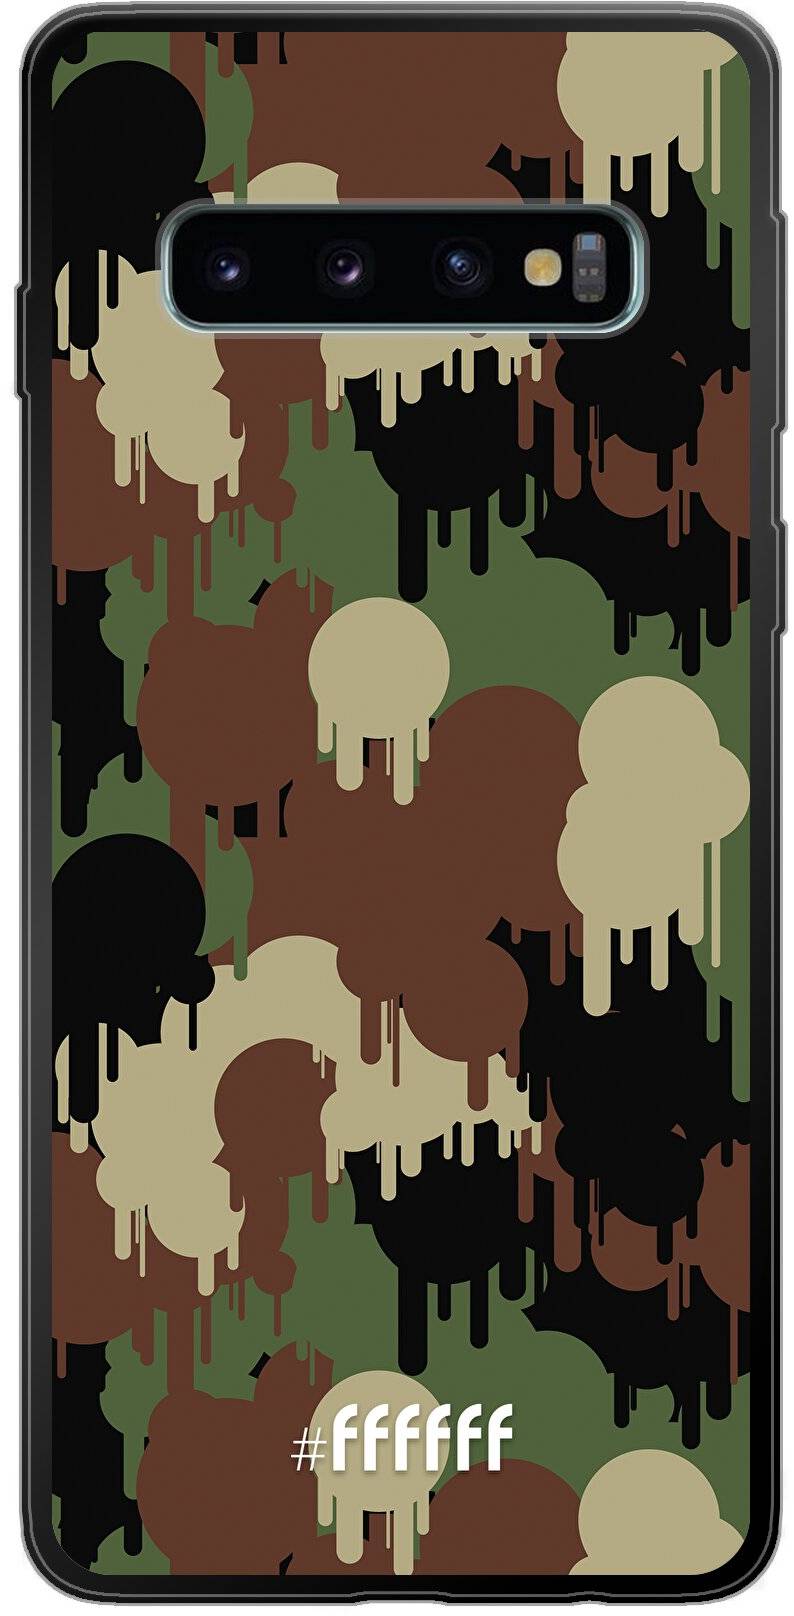 Graffiti Camouflage Galaxy S10